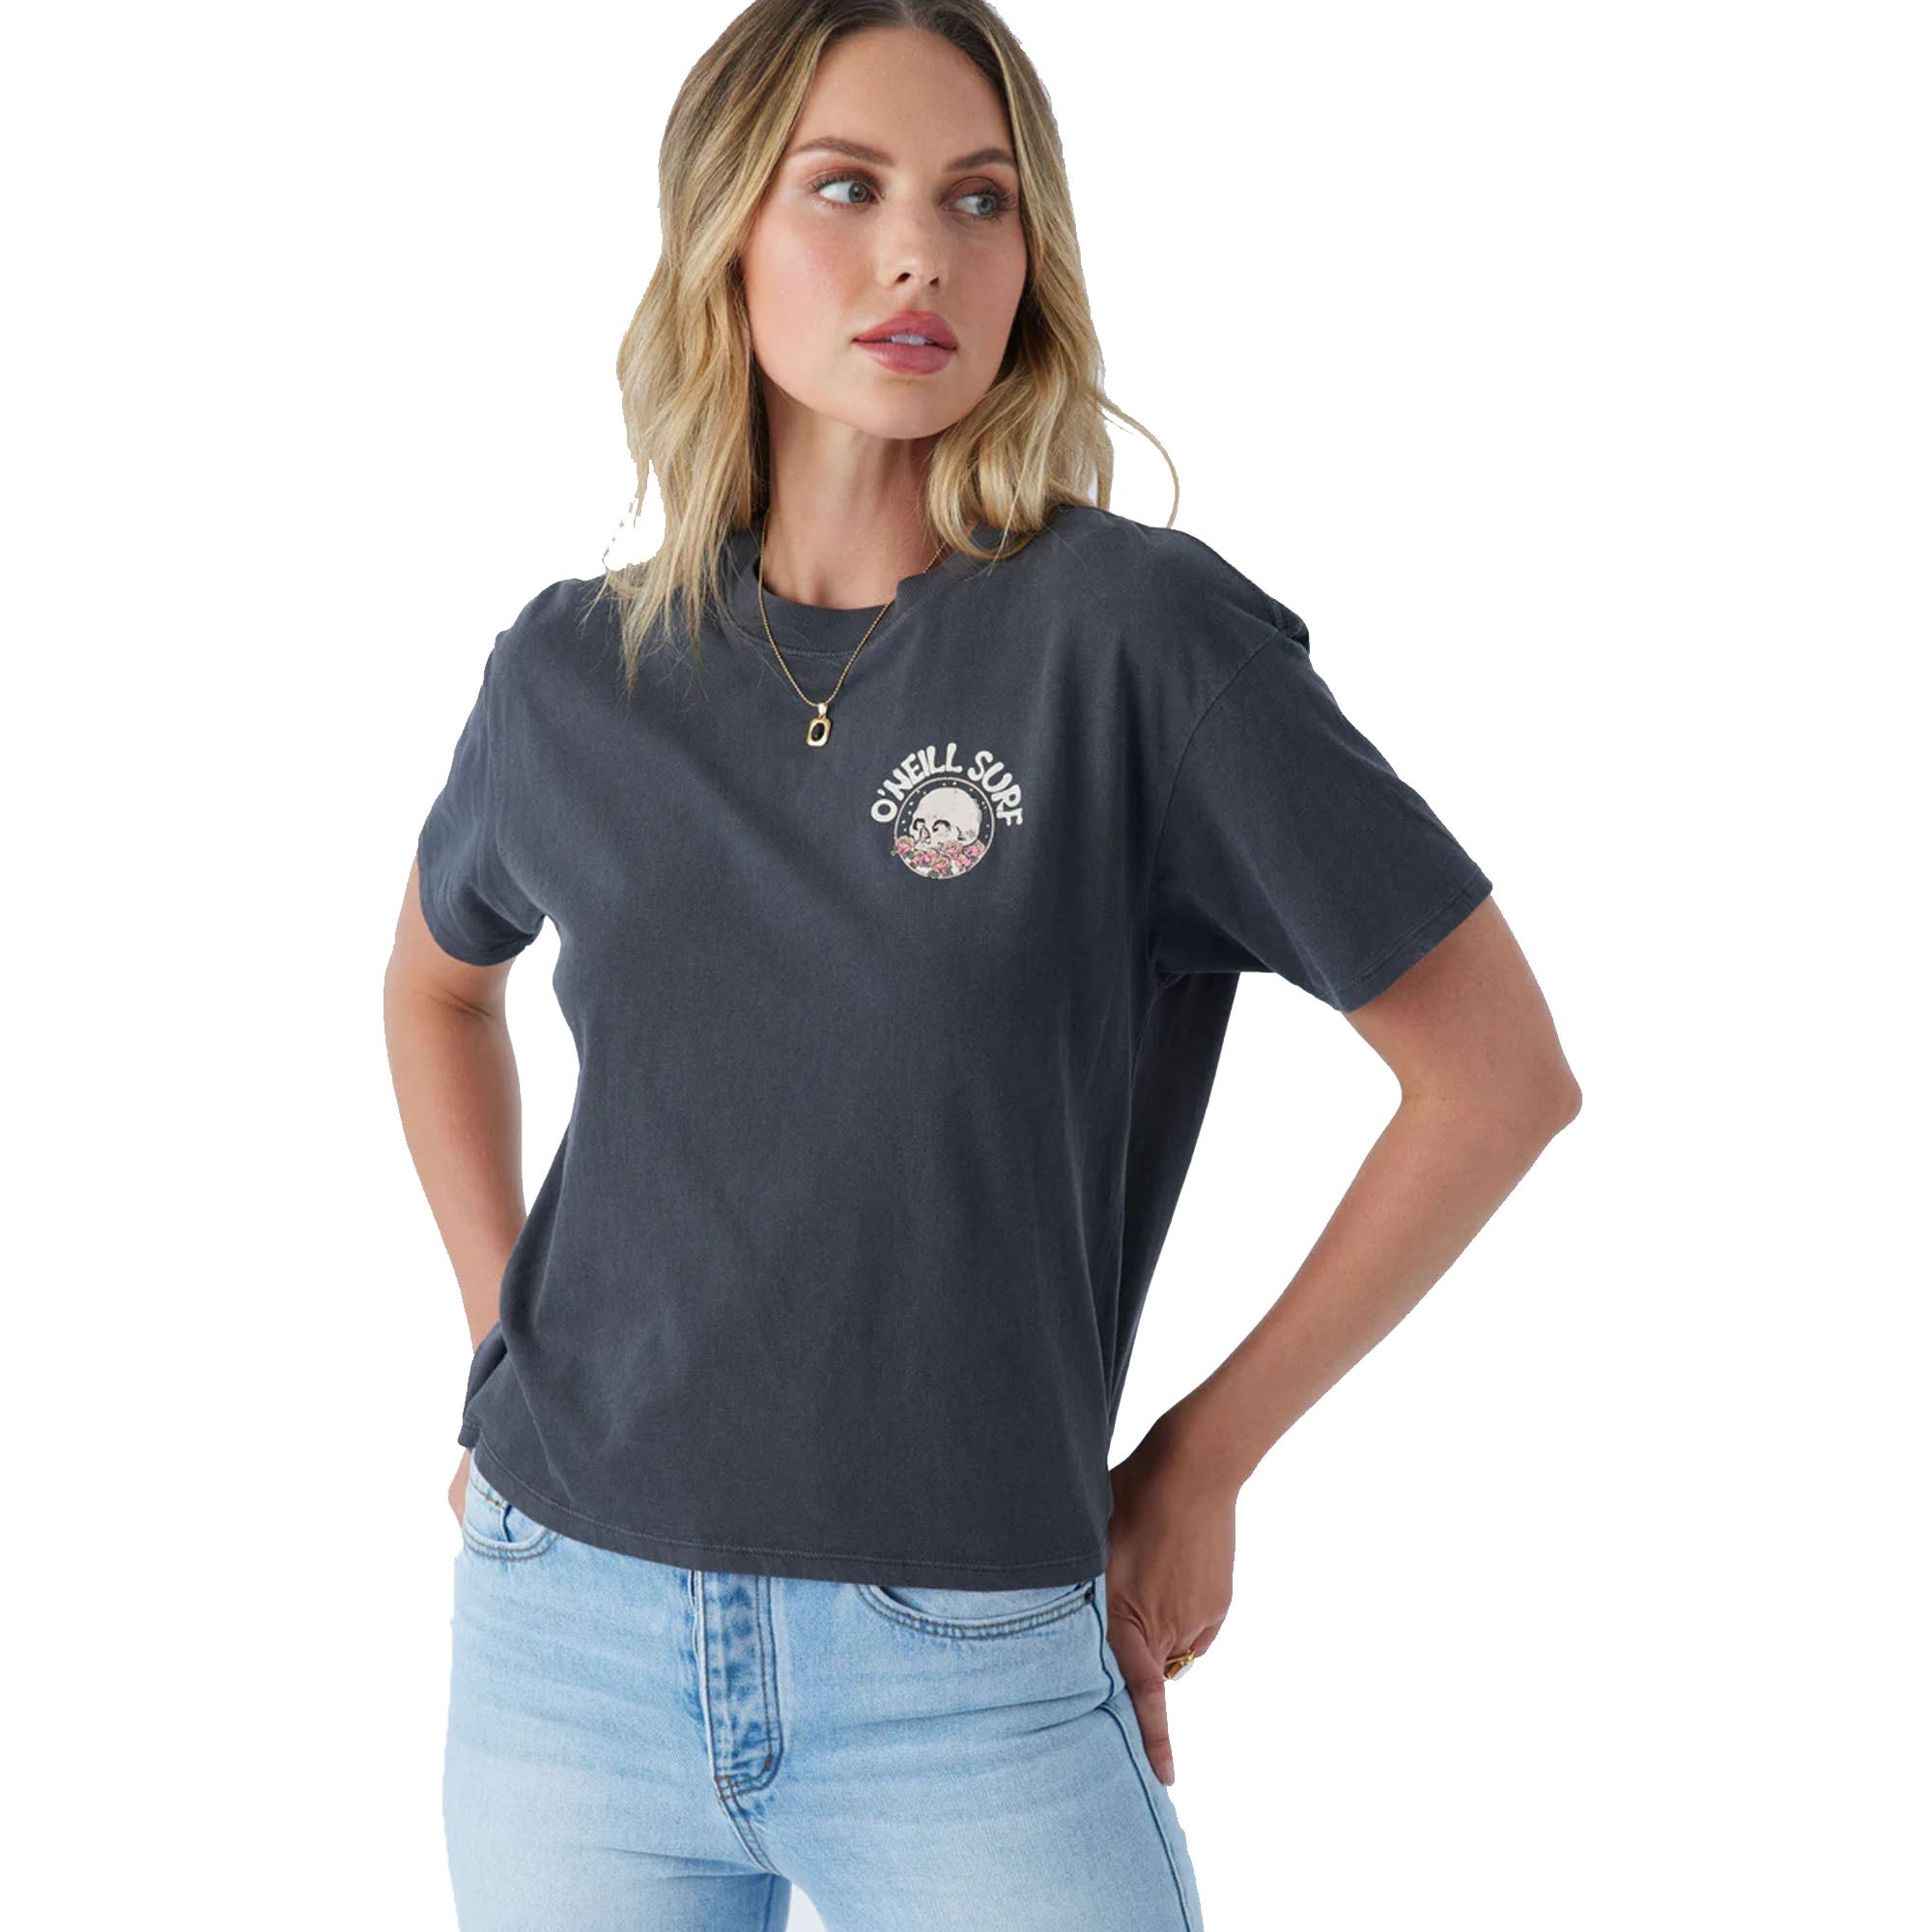 O'Neill Surf Co Women's S/S T-Shirt